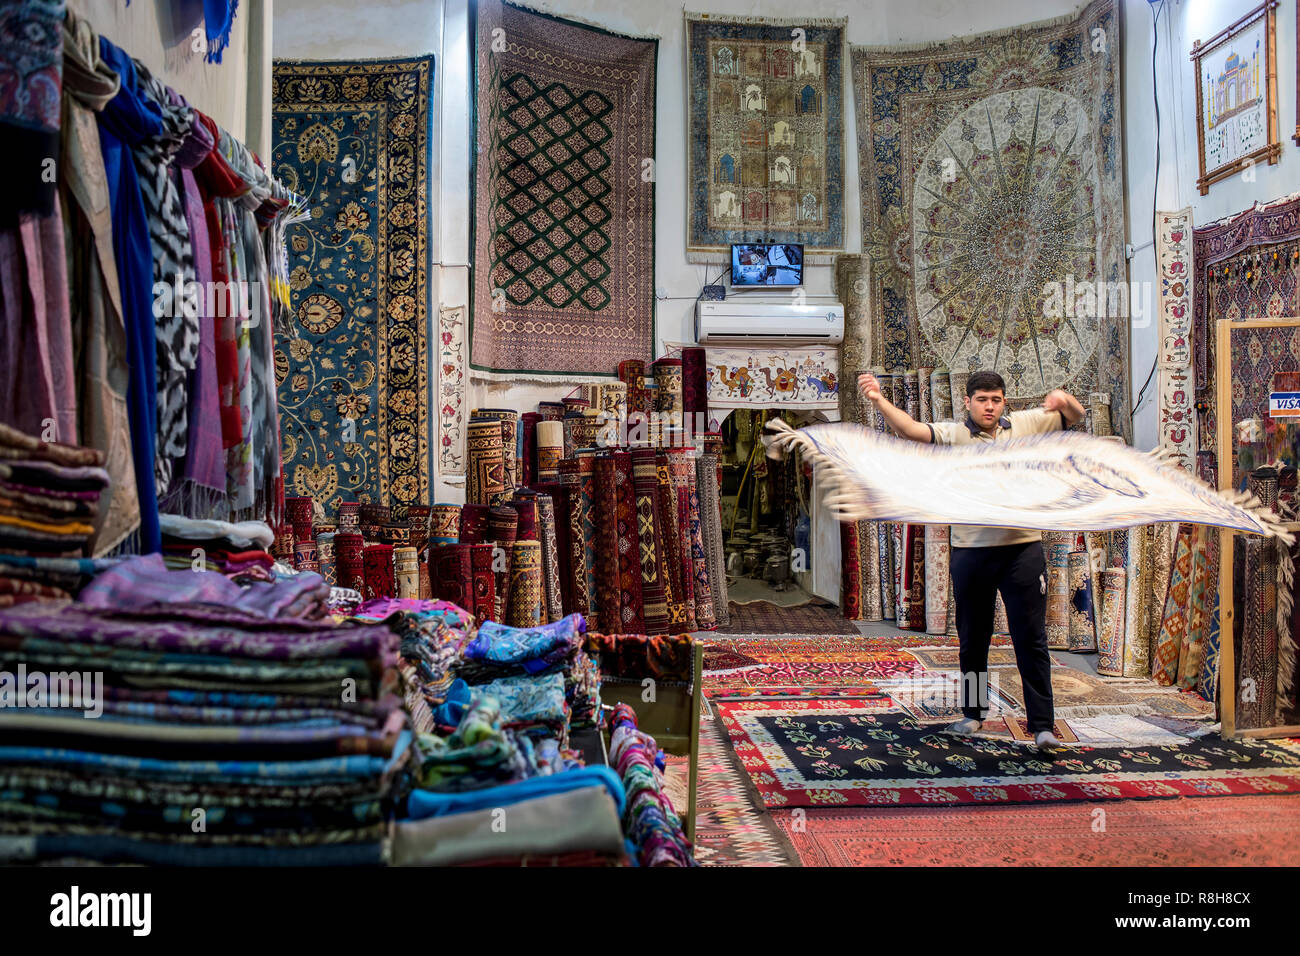 Carpet shop, in Taki Zargaron bazaar, Bukhara, Uzbekistan Stock Photo